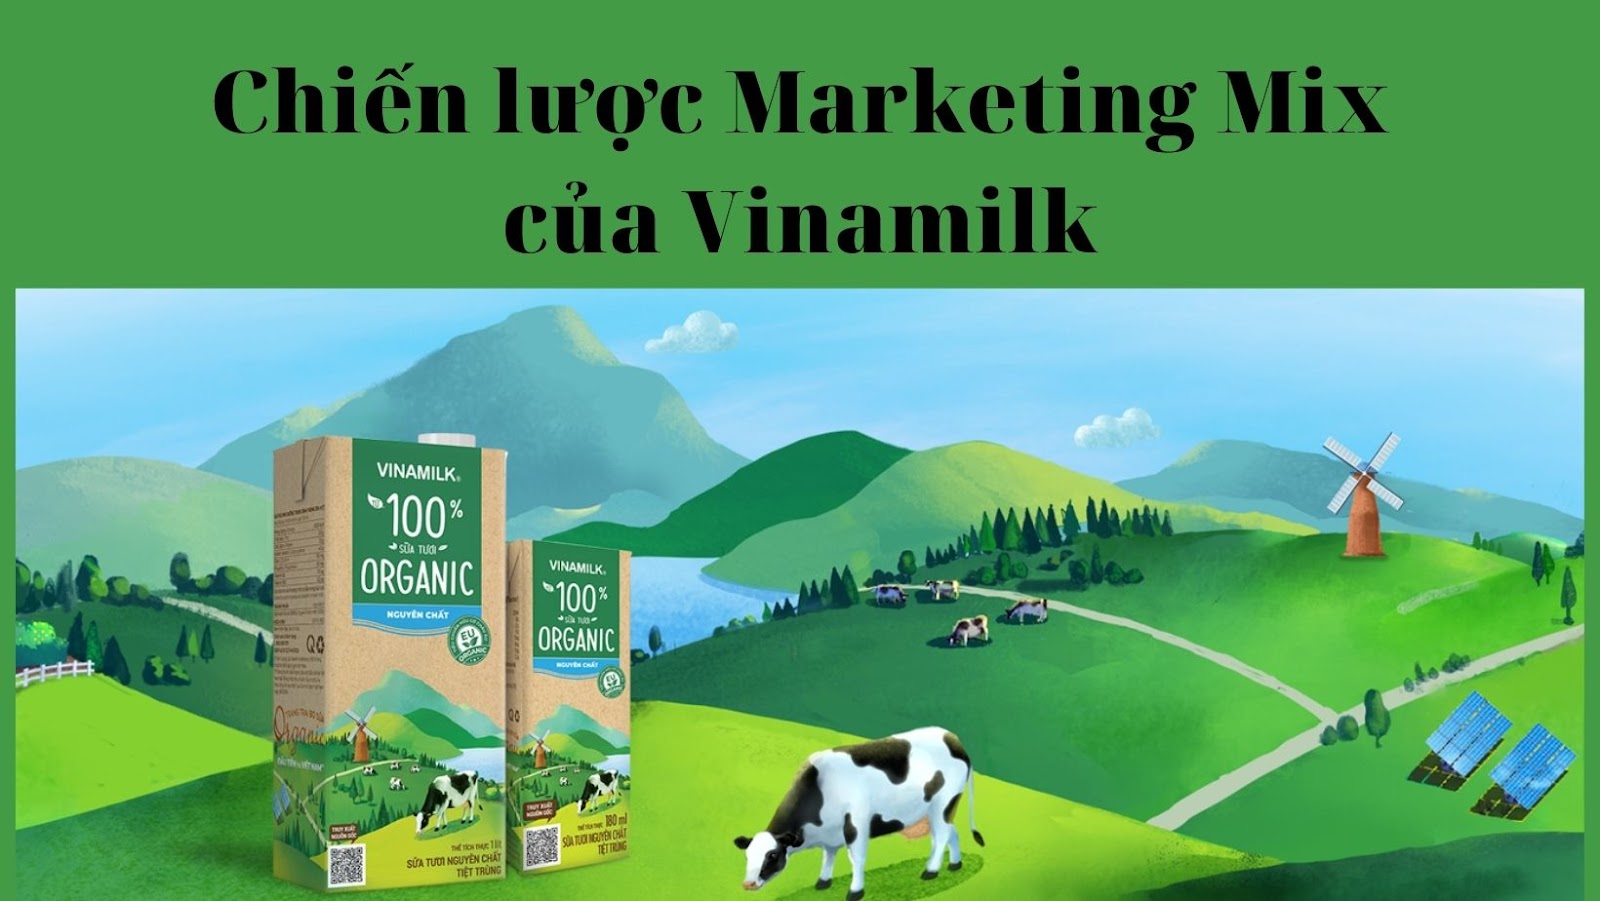 Chiến lược marketing của vianmilk
